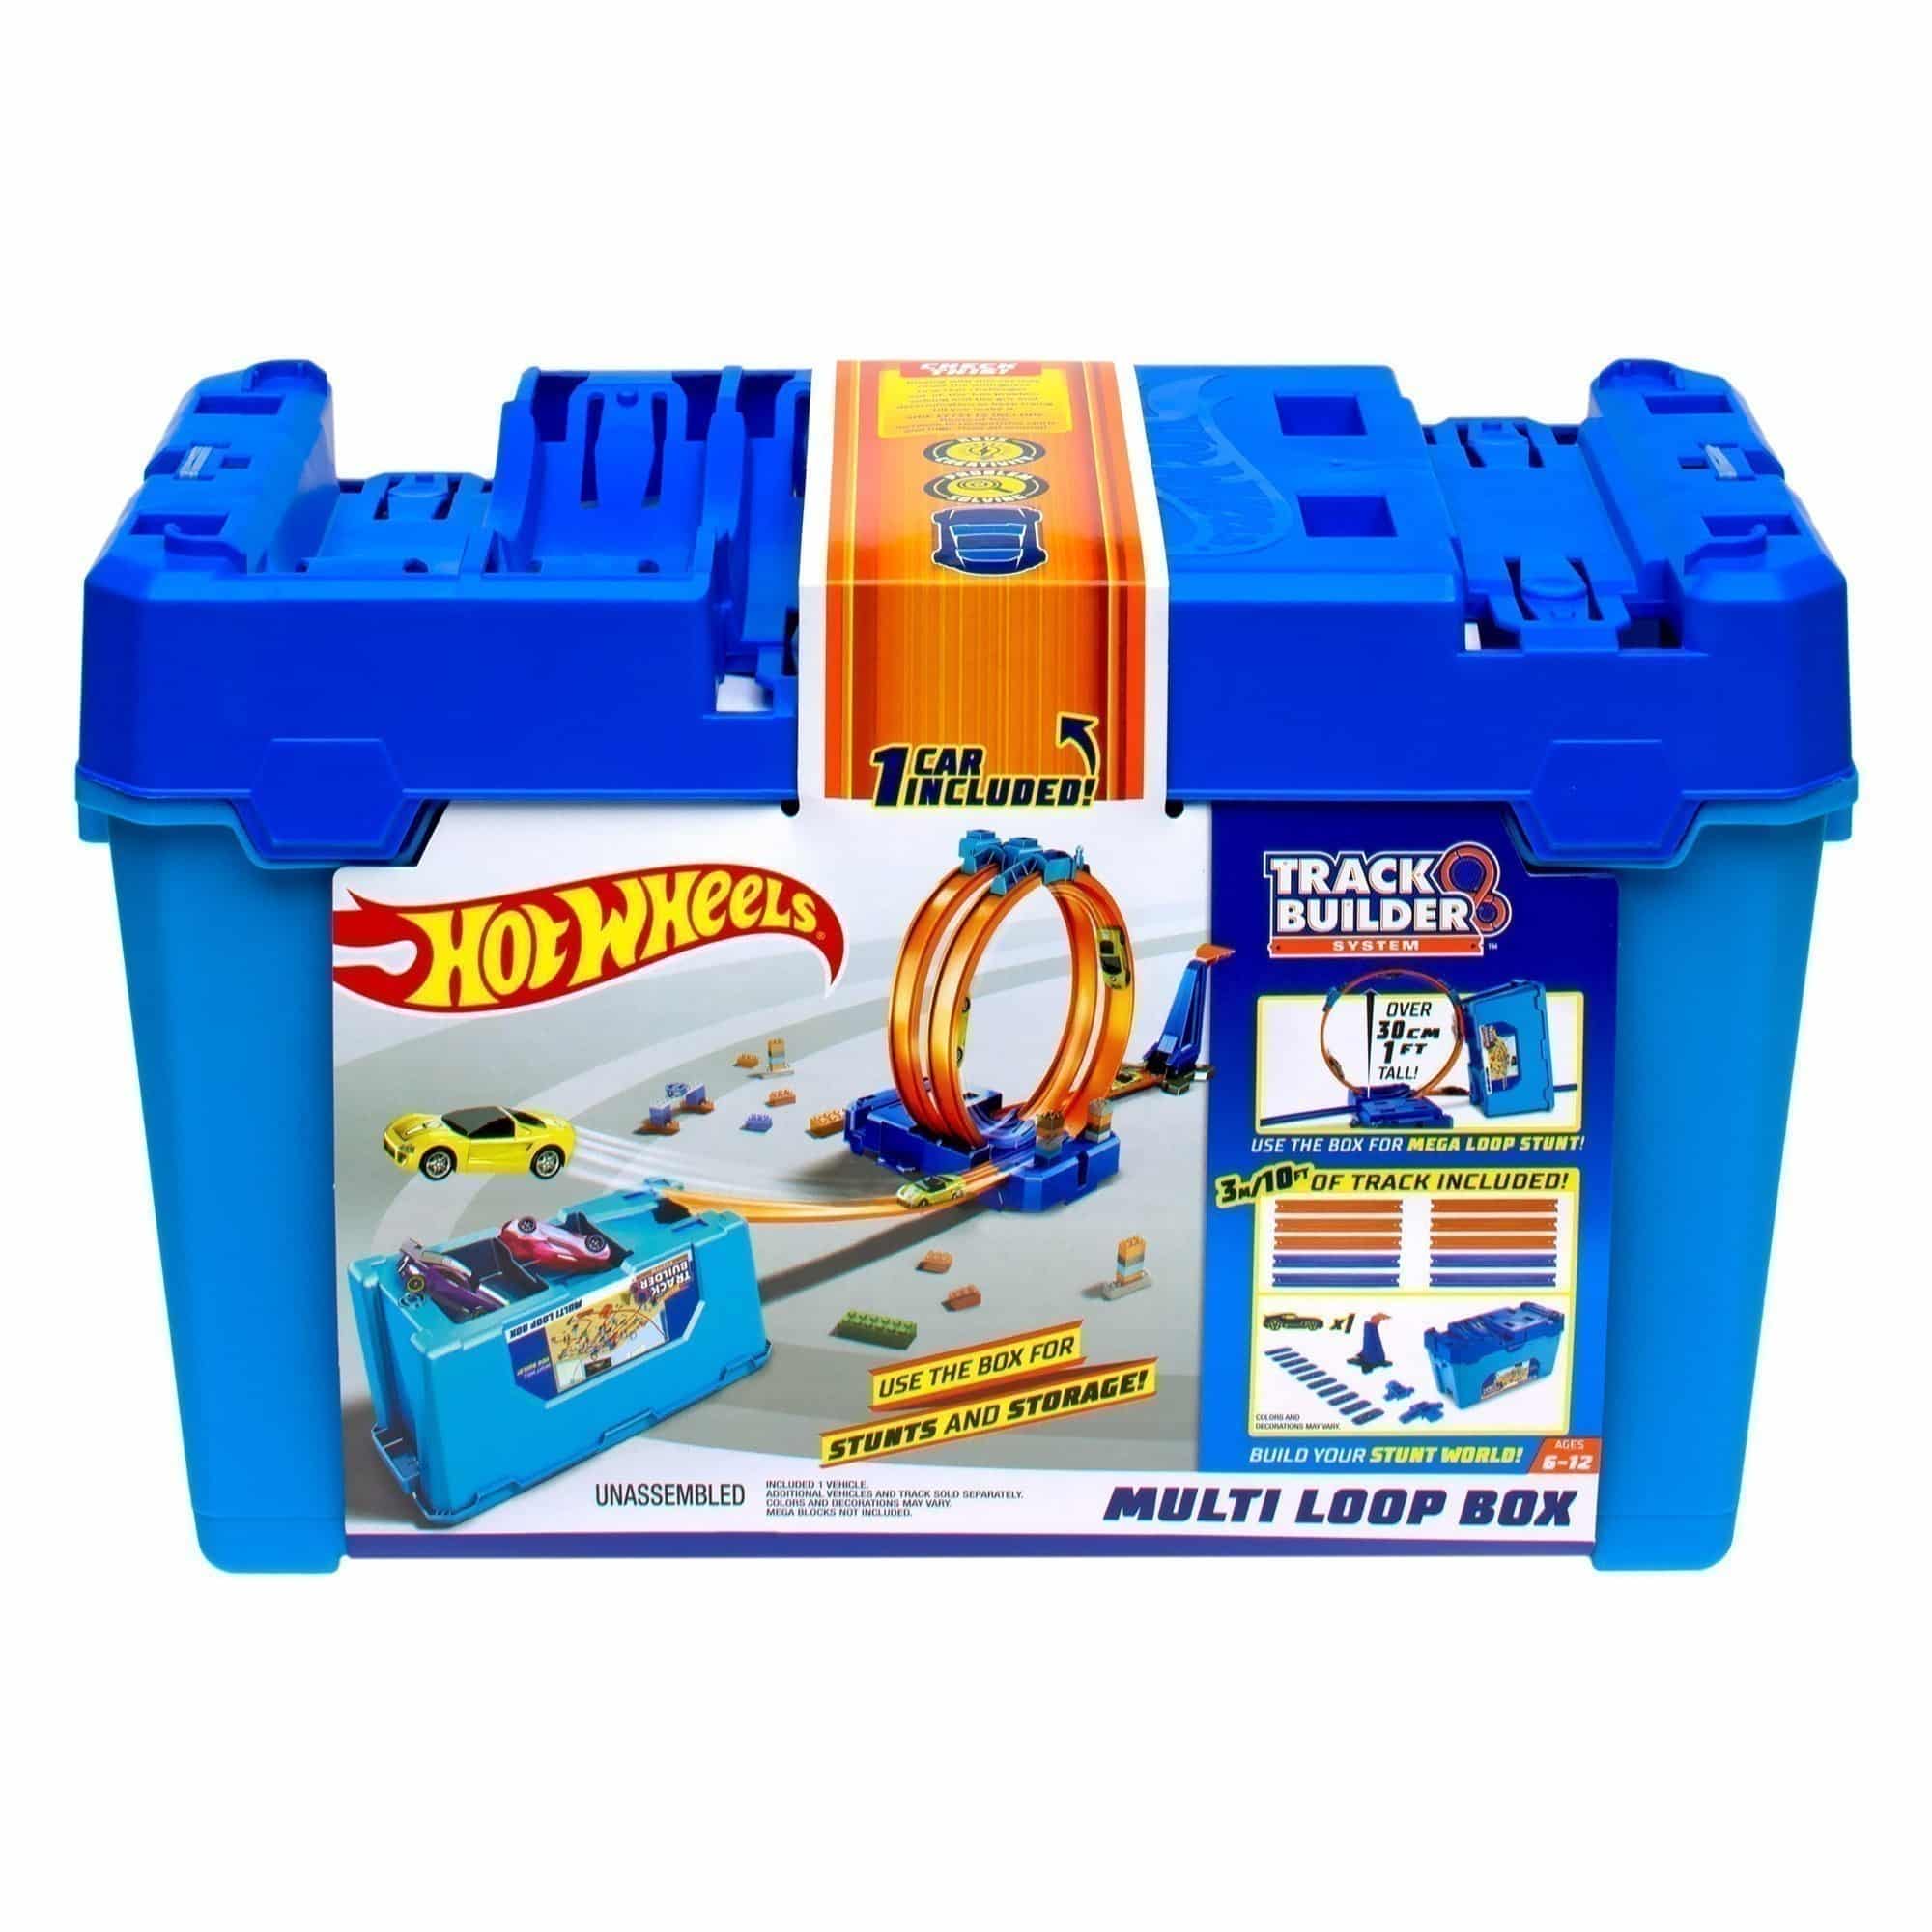 Hot Wheels - Track Builder - Multi Loop Box